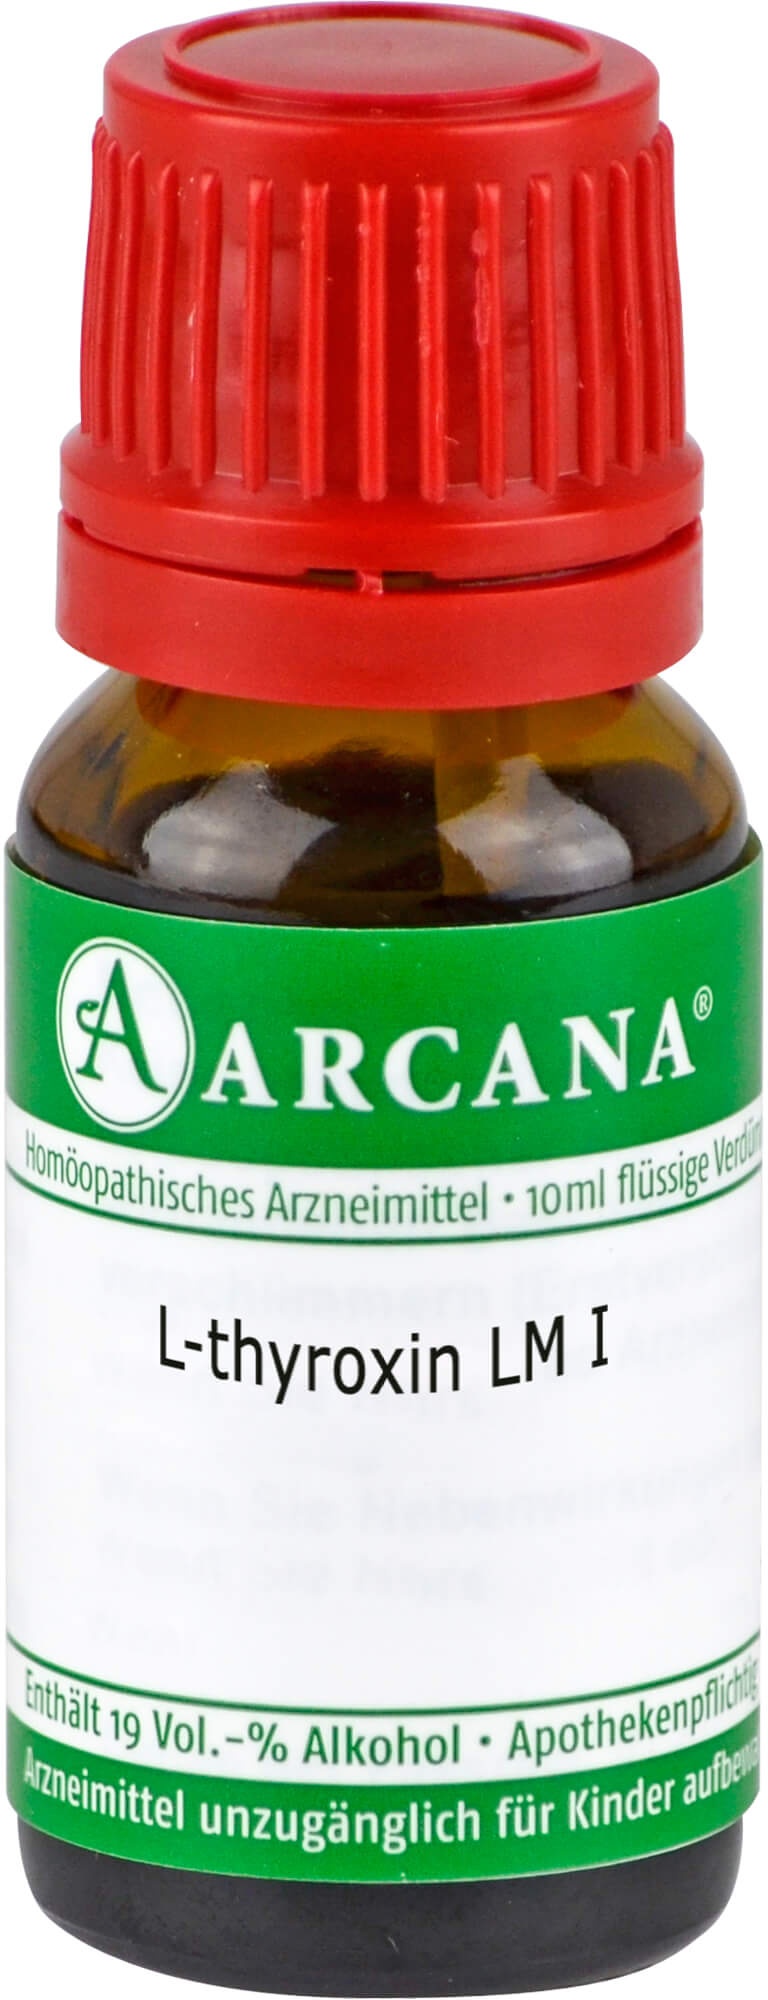 l thyroxin